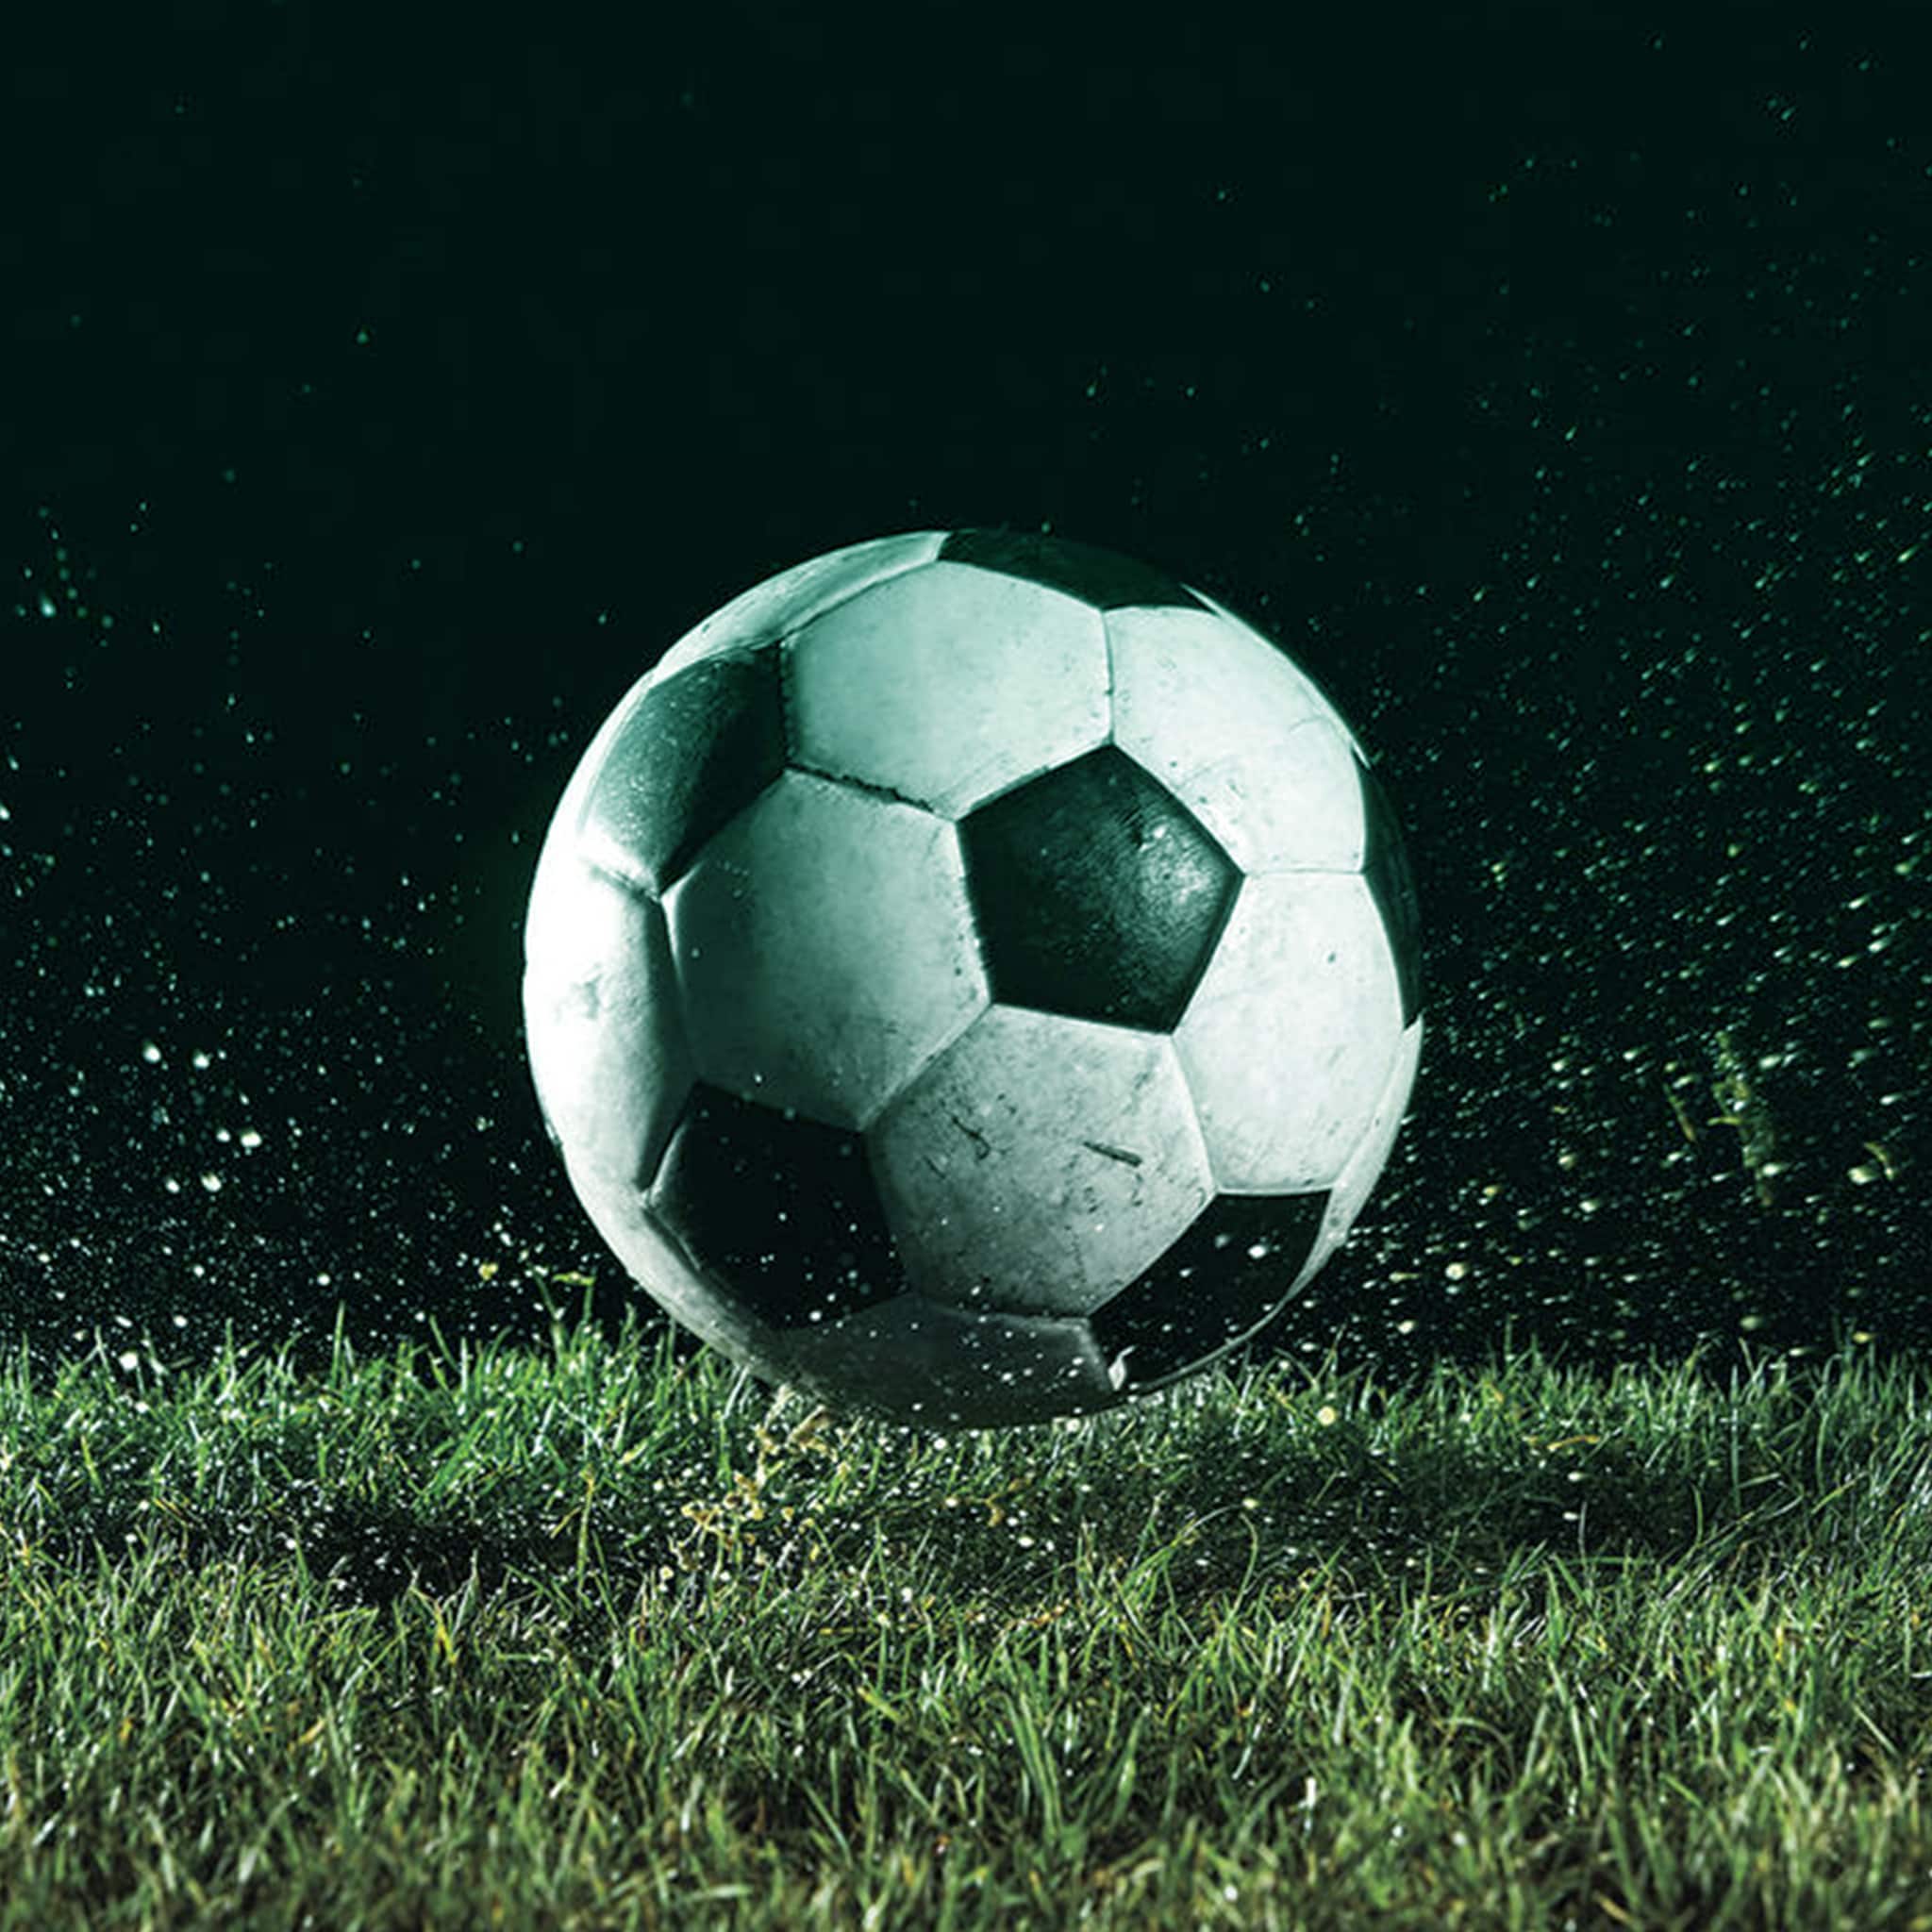 Pallone da calcio che rimbalza su un campo bagnato